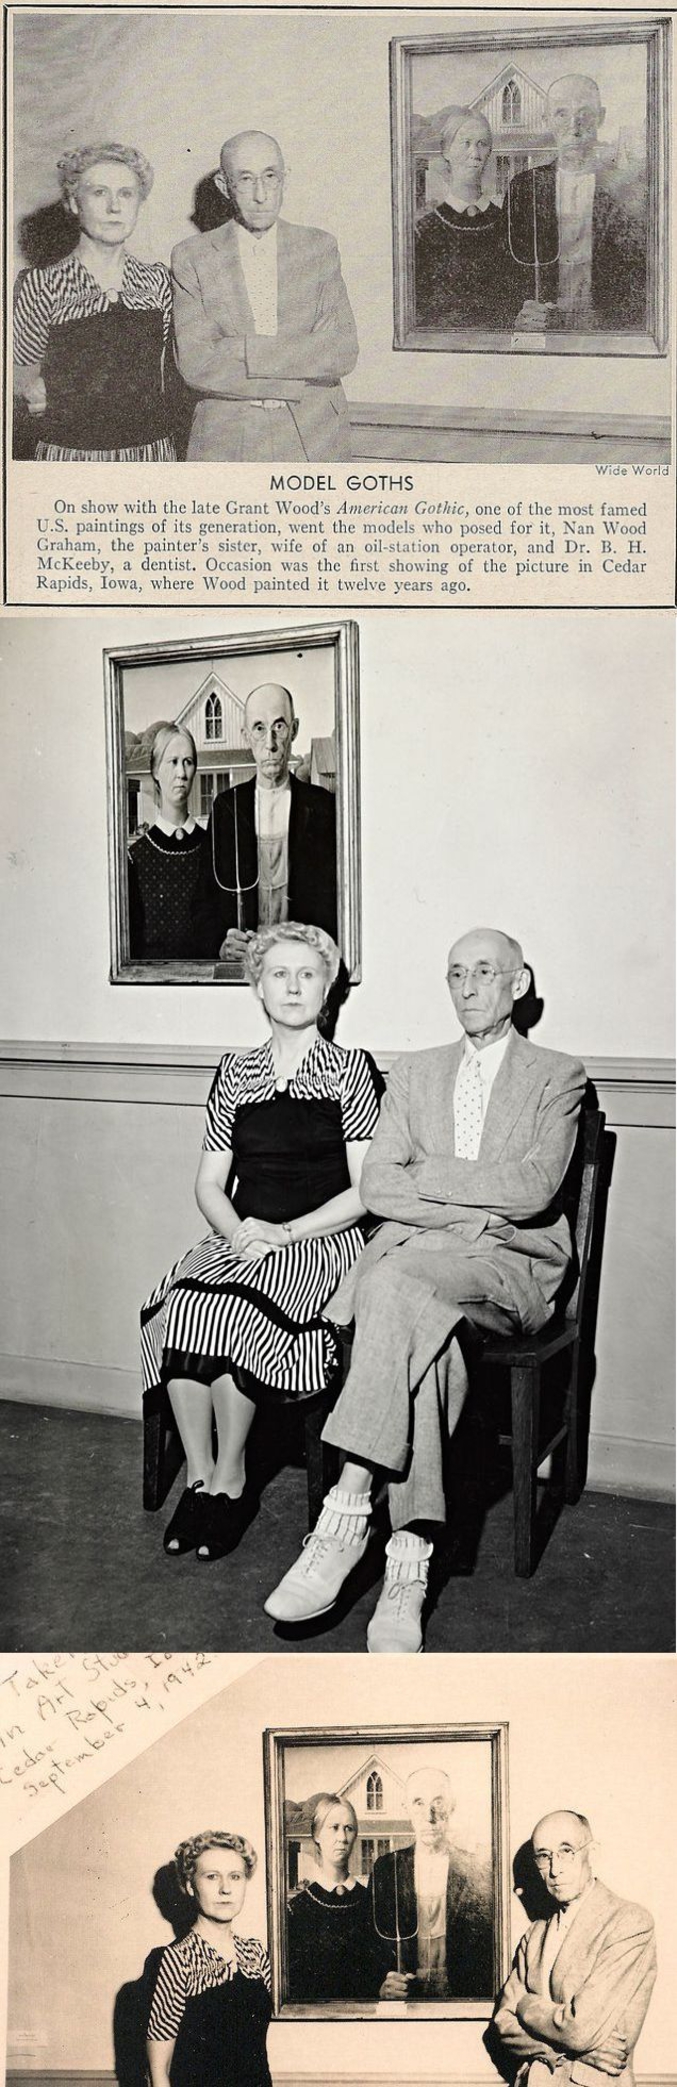 Le tableau de 1930 est supposé représenter un fermier et sa fille. En fait, la fille est Nan Wood (la soeur du peintre Grant Wood) et le père n'est autre que le dentiste de la famille Grant un certain Byron McKeely. On voit près du fameux tableau ceux qui ont posé, mais 12 ans plus tard, en 1942.